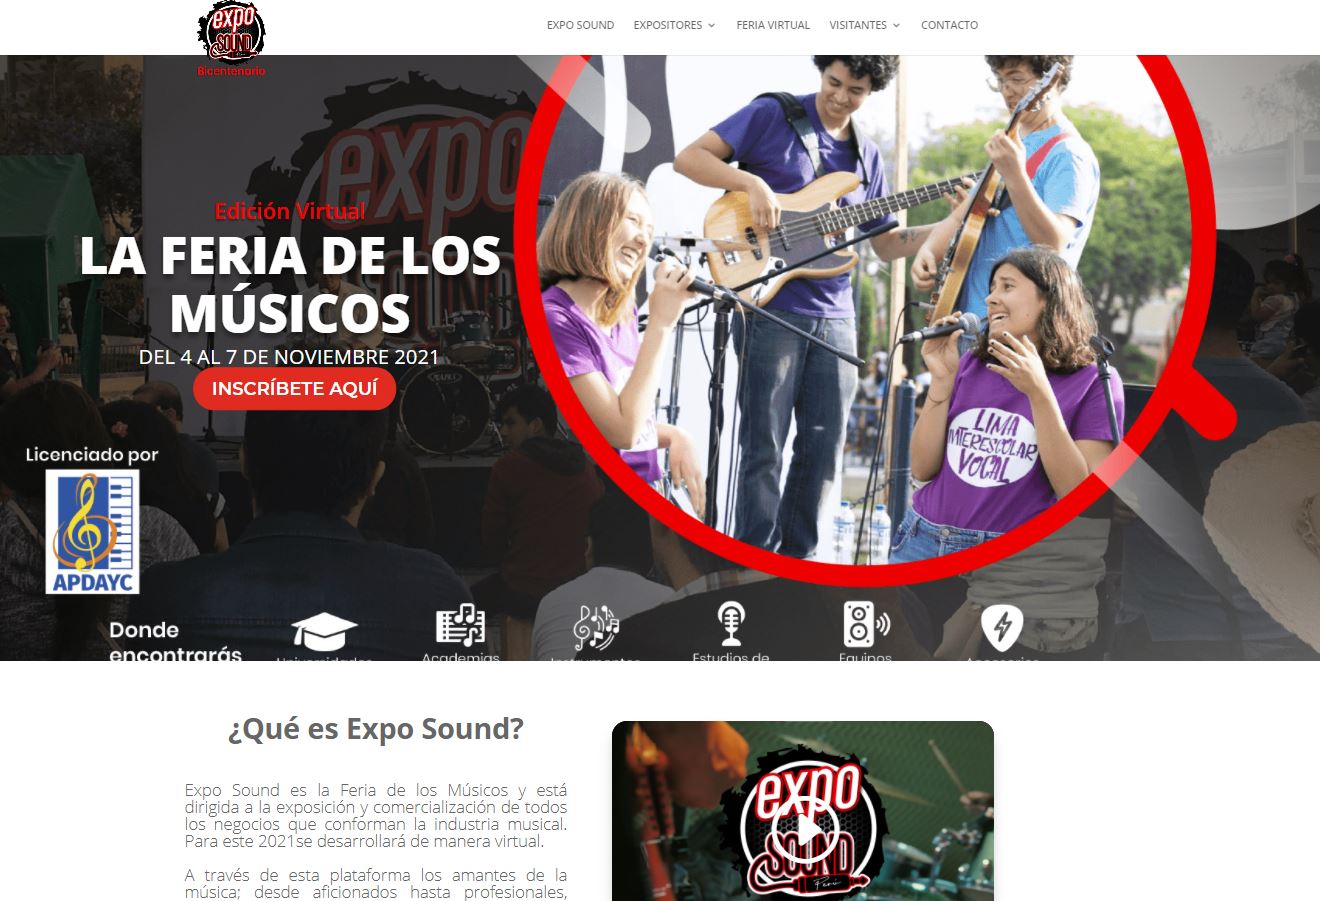 Feria de música Exposound fomentará la enseñanza de la música online